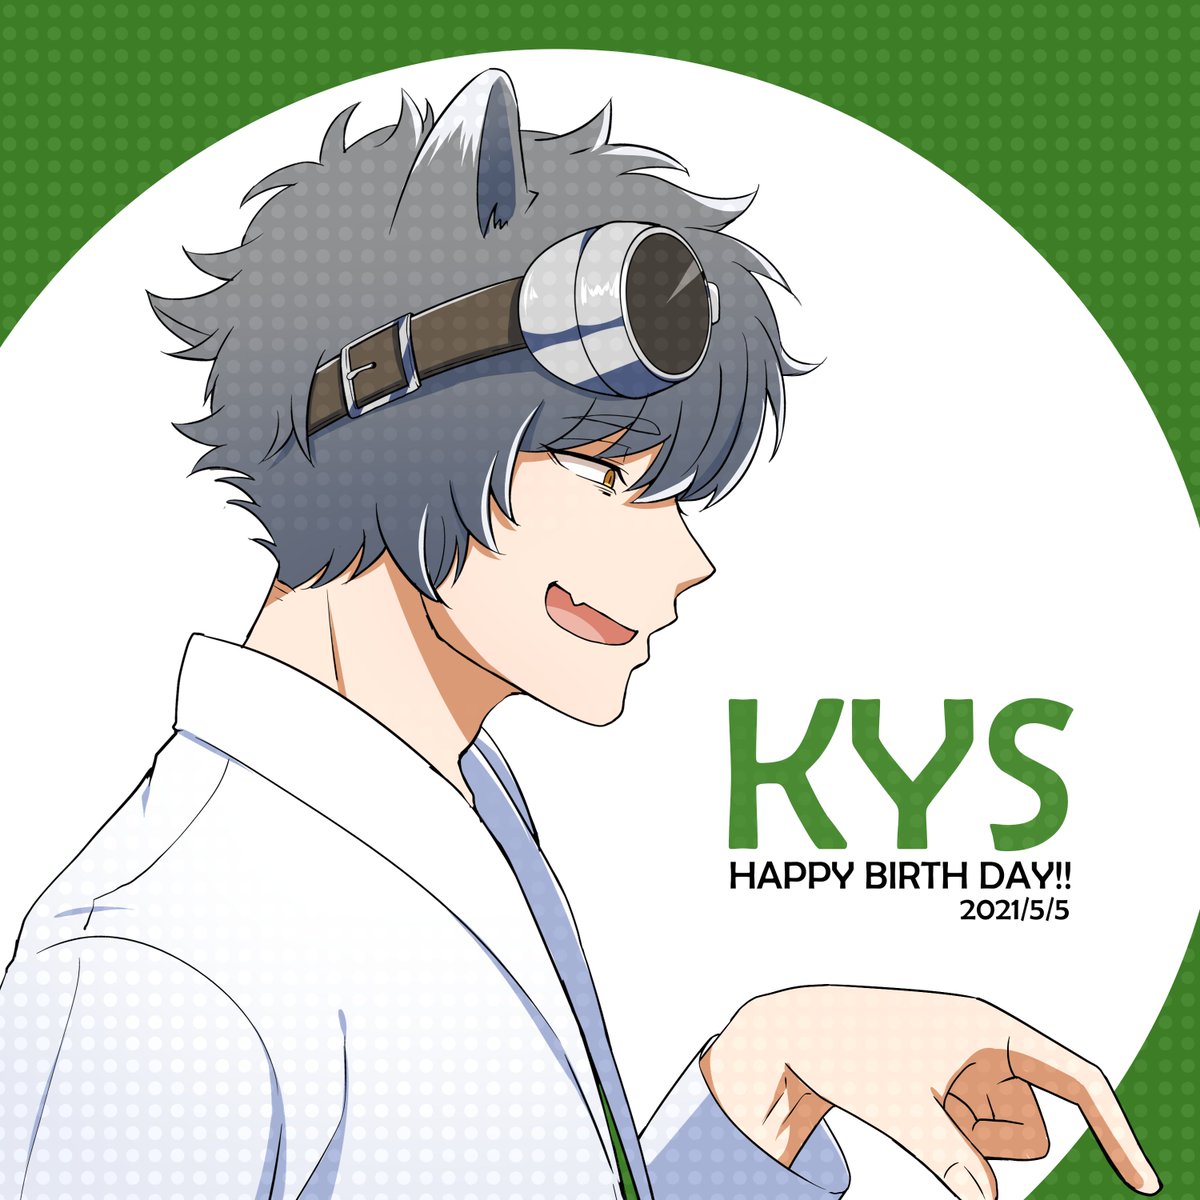 「KYSさん、お誕生日おめでとうございますーーー!!!#KYSを祝おうぜ2021 」|古鳥ぴよ🐣🐥🐥🎍のイラスト